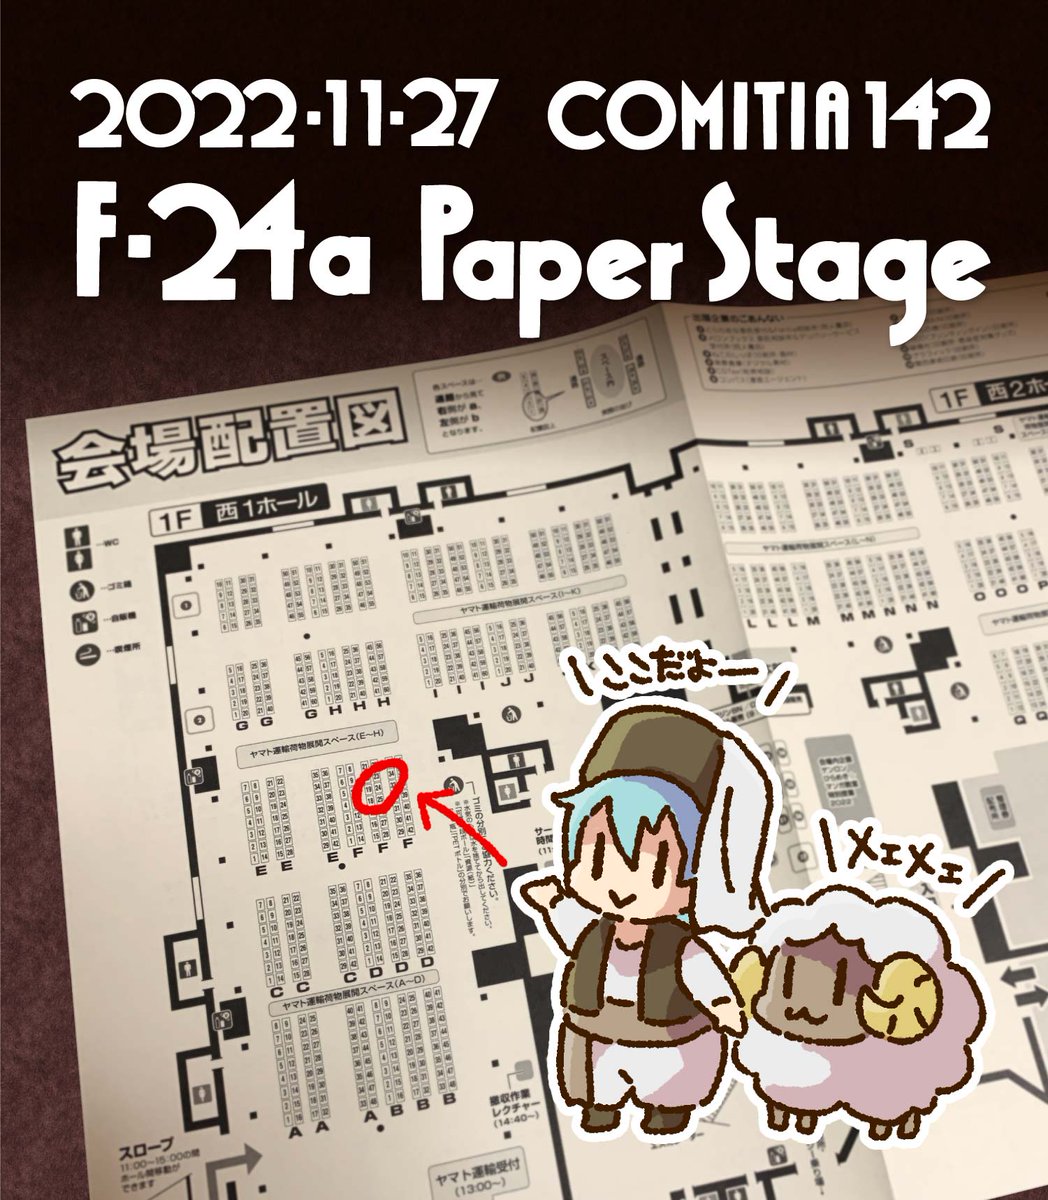 〜お知らせ〜
2022年11月27日(日)
東京ビッグサイトで開催の #COMITIA142 に参加します!

西1ホール【F24a】PaperStageです
新刊と総集編があります!よろしくお願いします〜 